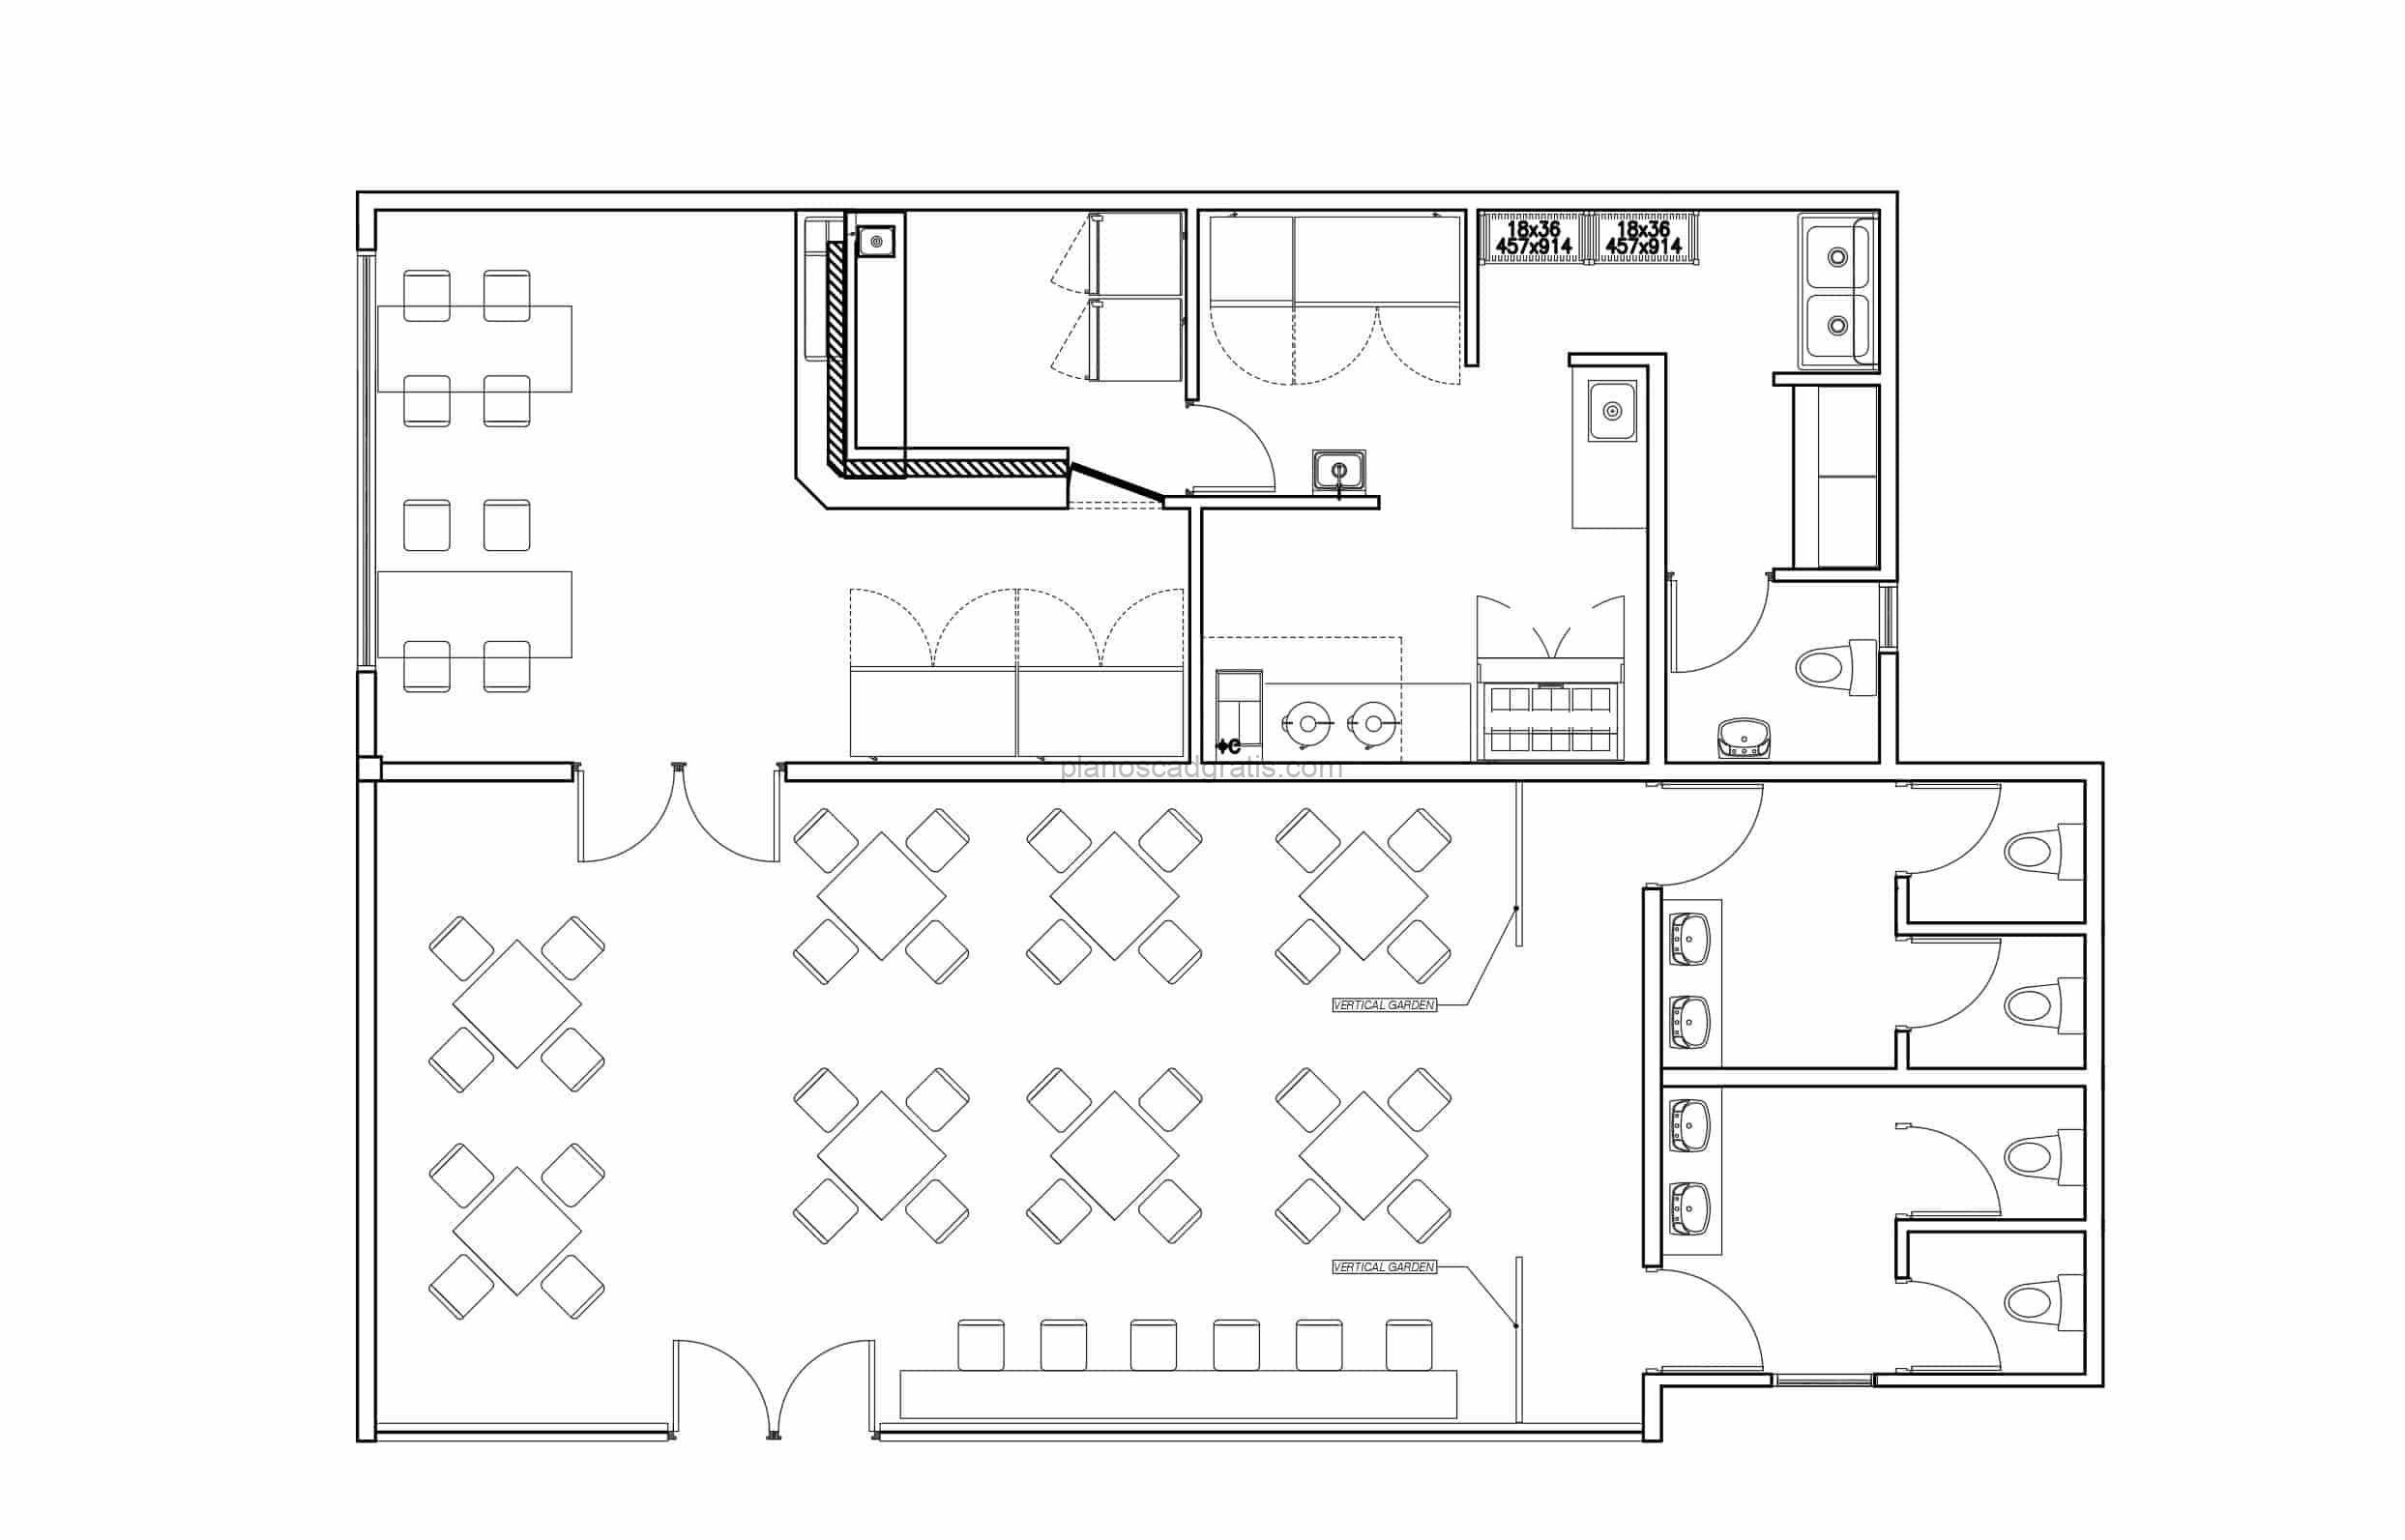 Proyecto en dibujos 2d de bar sushi con area de restaurant totalmente amueblado con bloques de AutoCAD, plano para descarga gratis, proyectos de restaurantes, cafeterias, y cocinas comerciales.